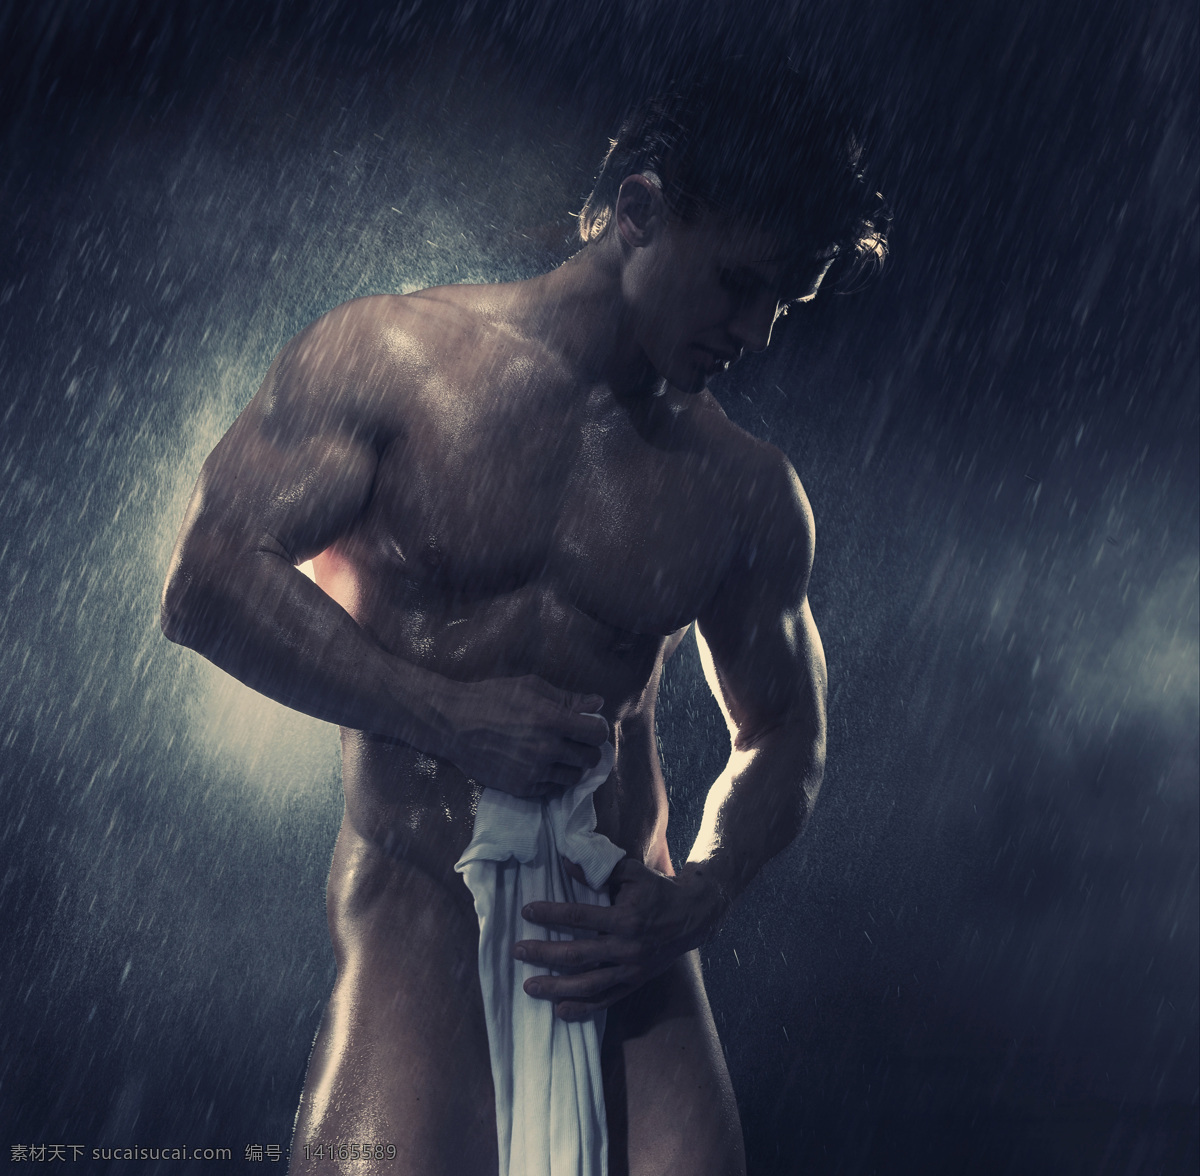 淋浴 肌肉 男人 强壮男人 肌肉男 猛男 健美运动员 健身 时尚男人 健康男性 男人图片 人物图片